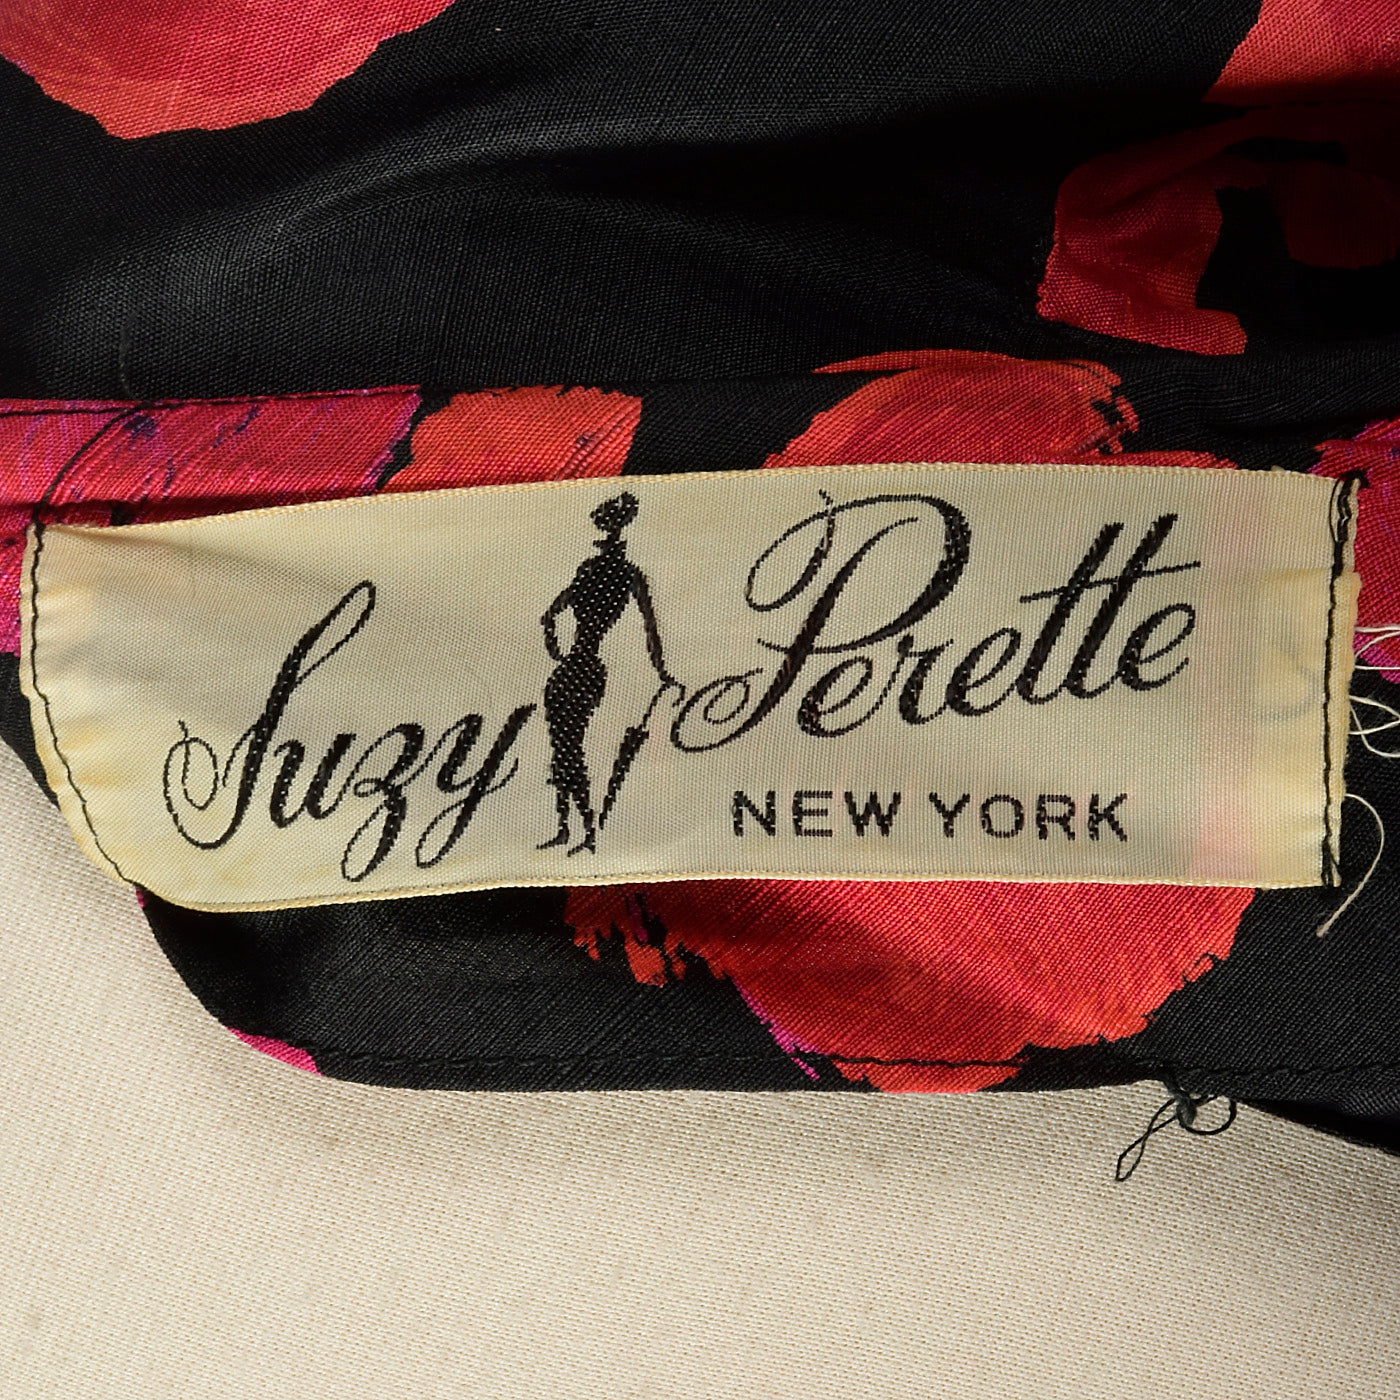 1950s Suzy Perette Silk Floral Dress